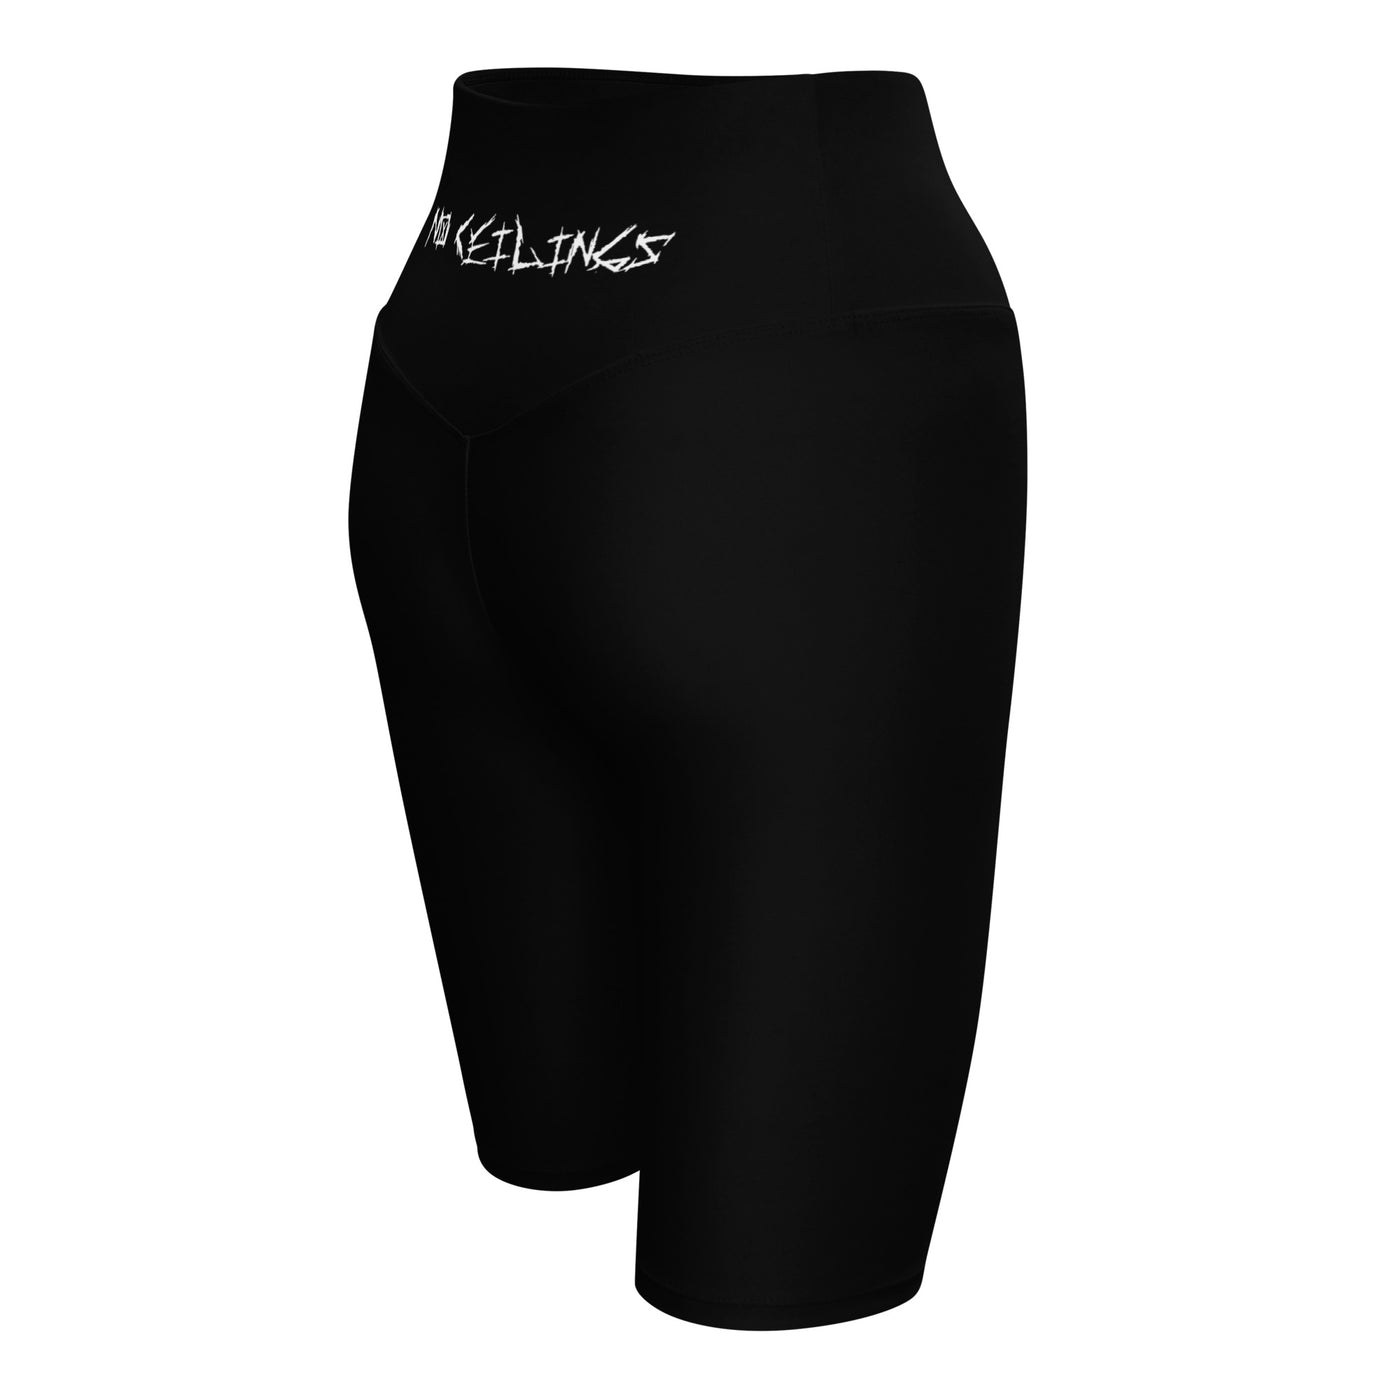 Noceilings Biker Shorts - NoCeilingsClothing